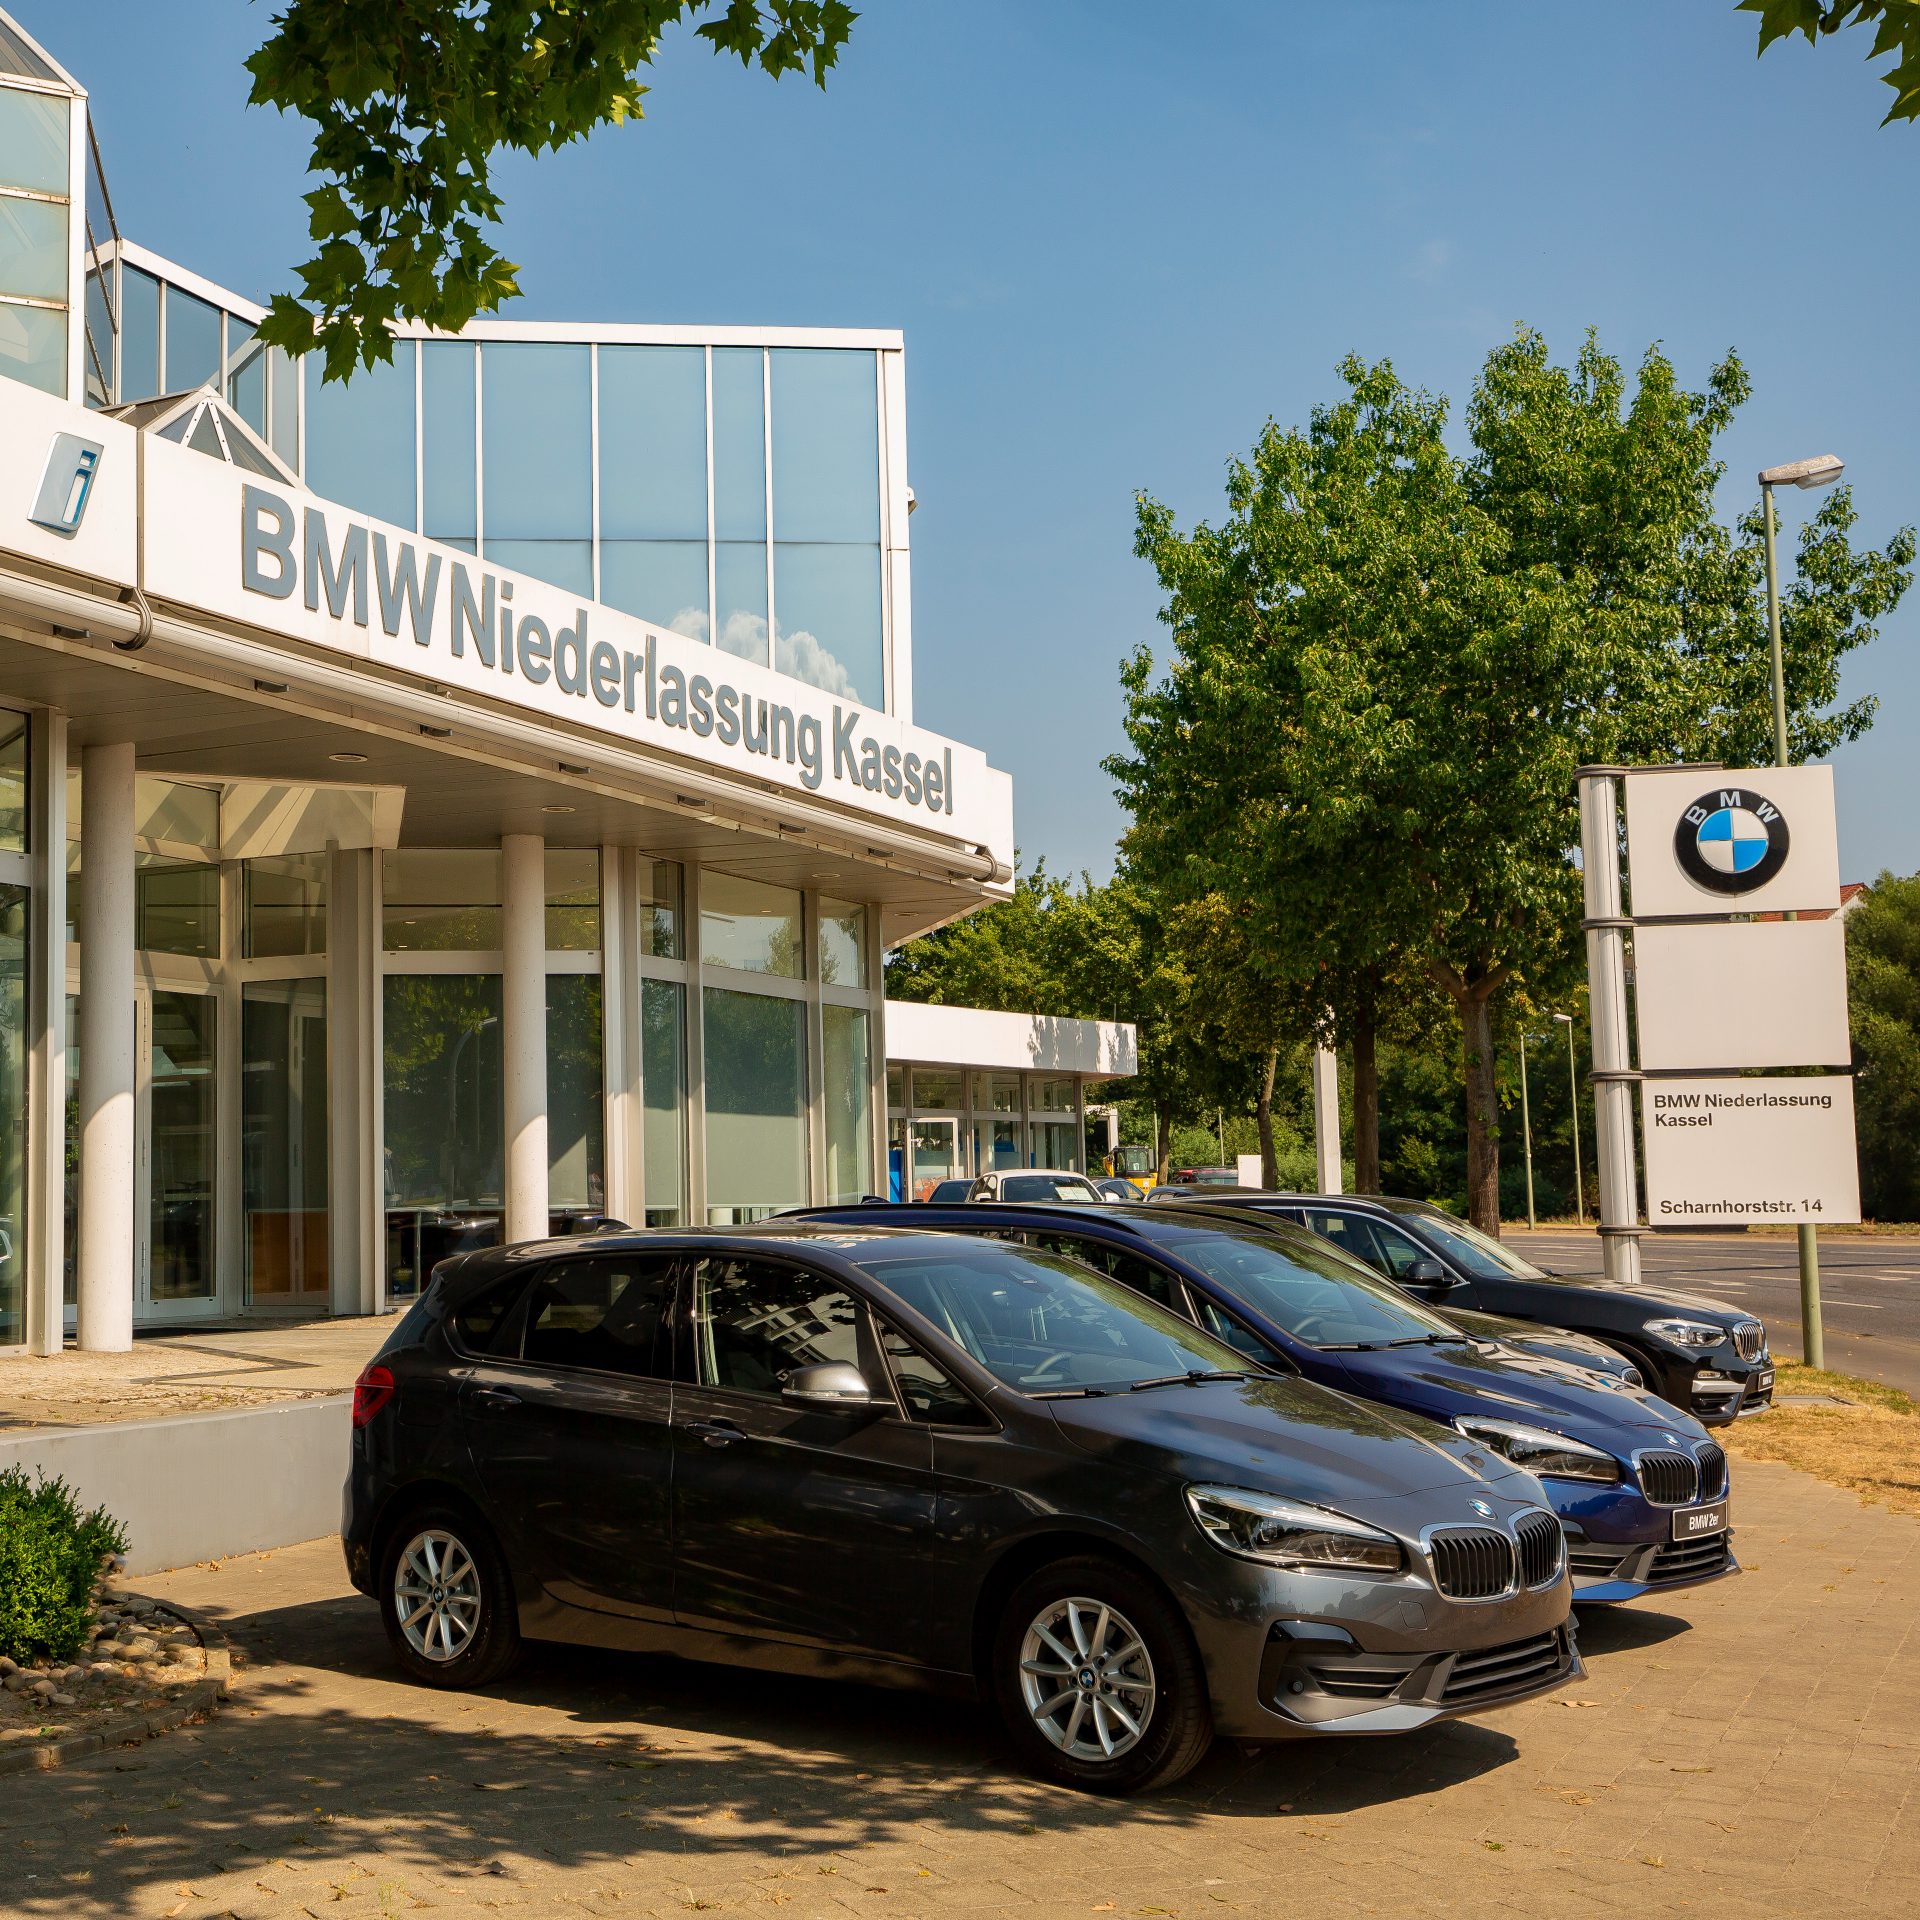 Das Bild zeigt die BMW Niederlassung Kassel.